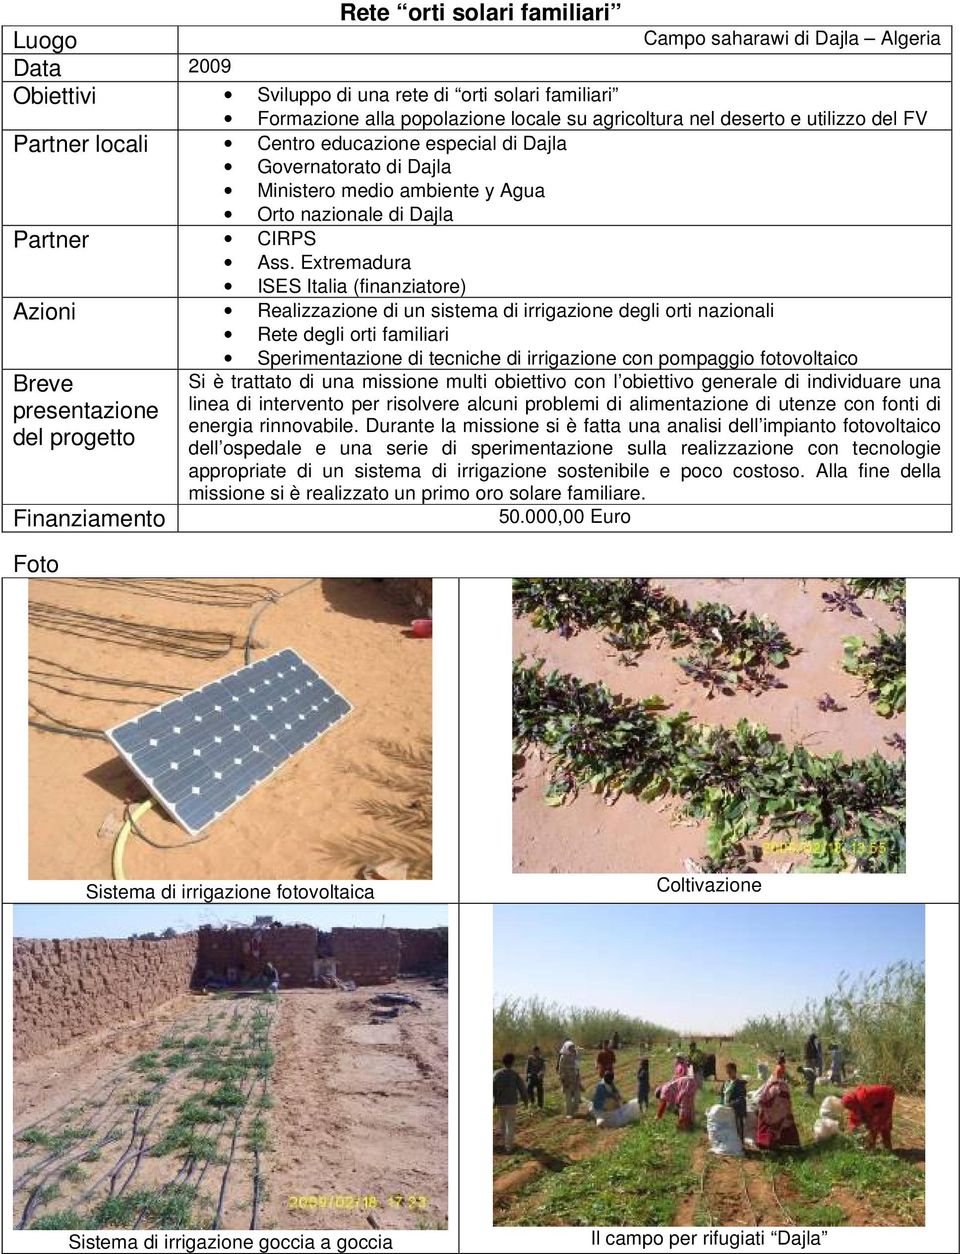 Extremadura ISES Italia (finanziatore) Azioni Realizzazione di un sistema di irrigazione degli orti nazionali Rete degli orti familiari Sperimentazione di tecniche di irrigazione con pompaggio